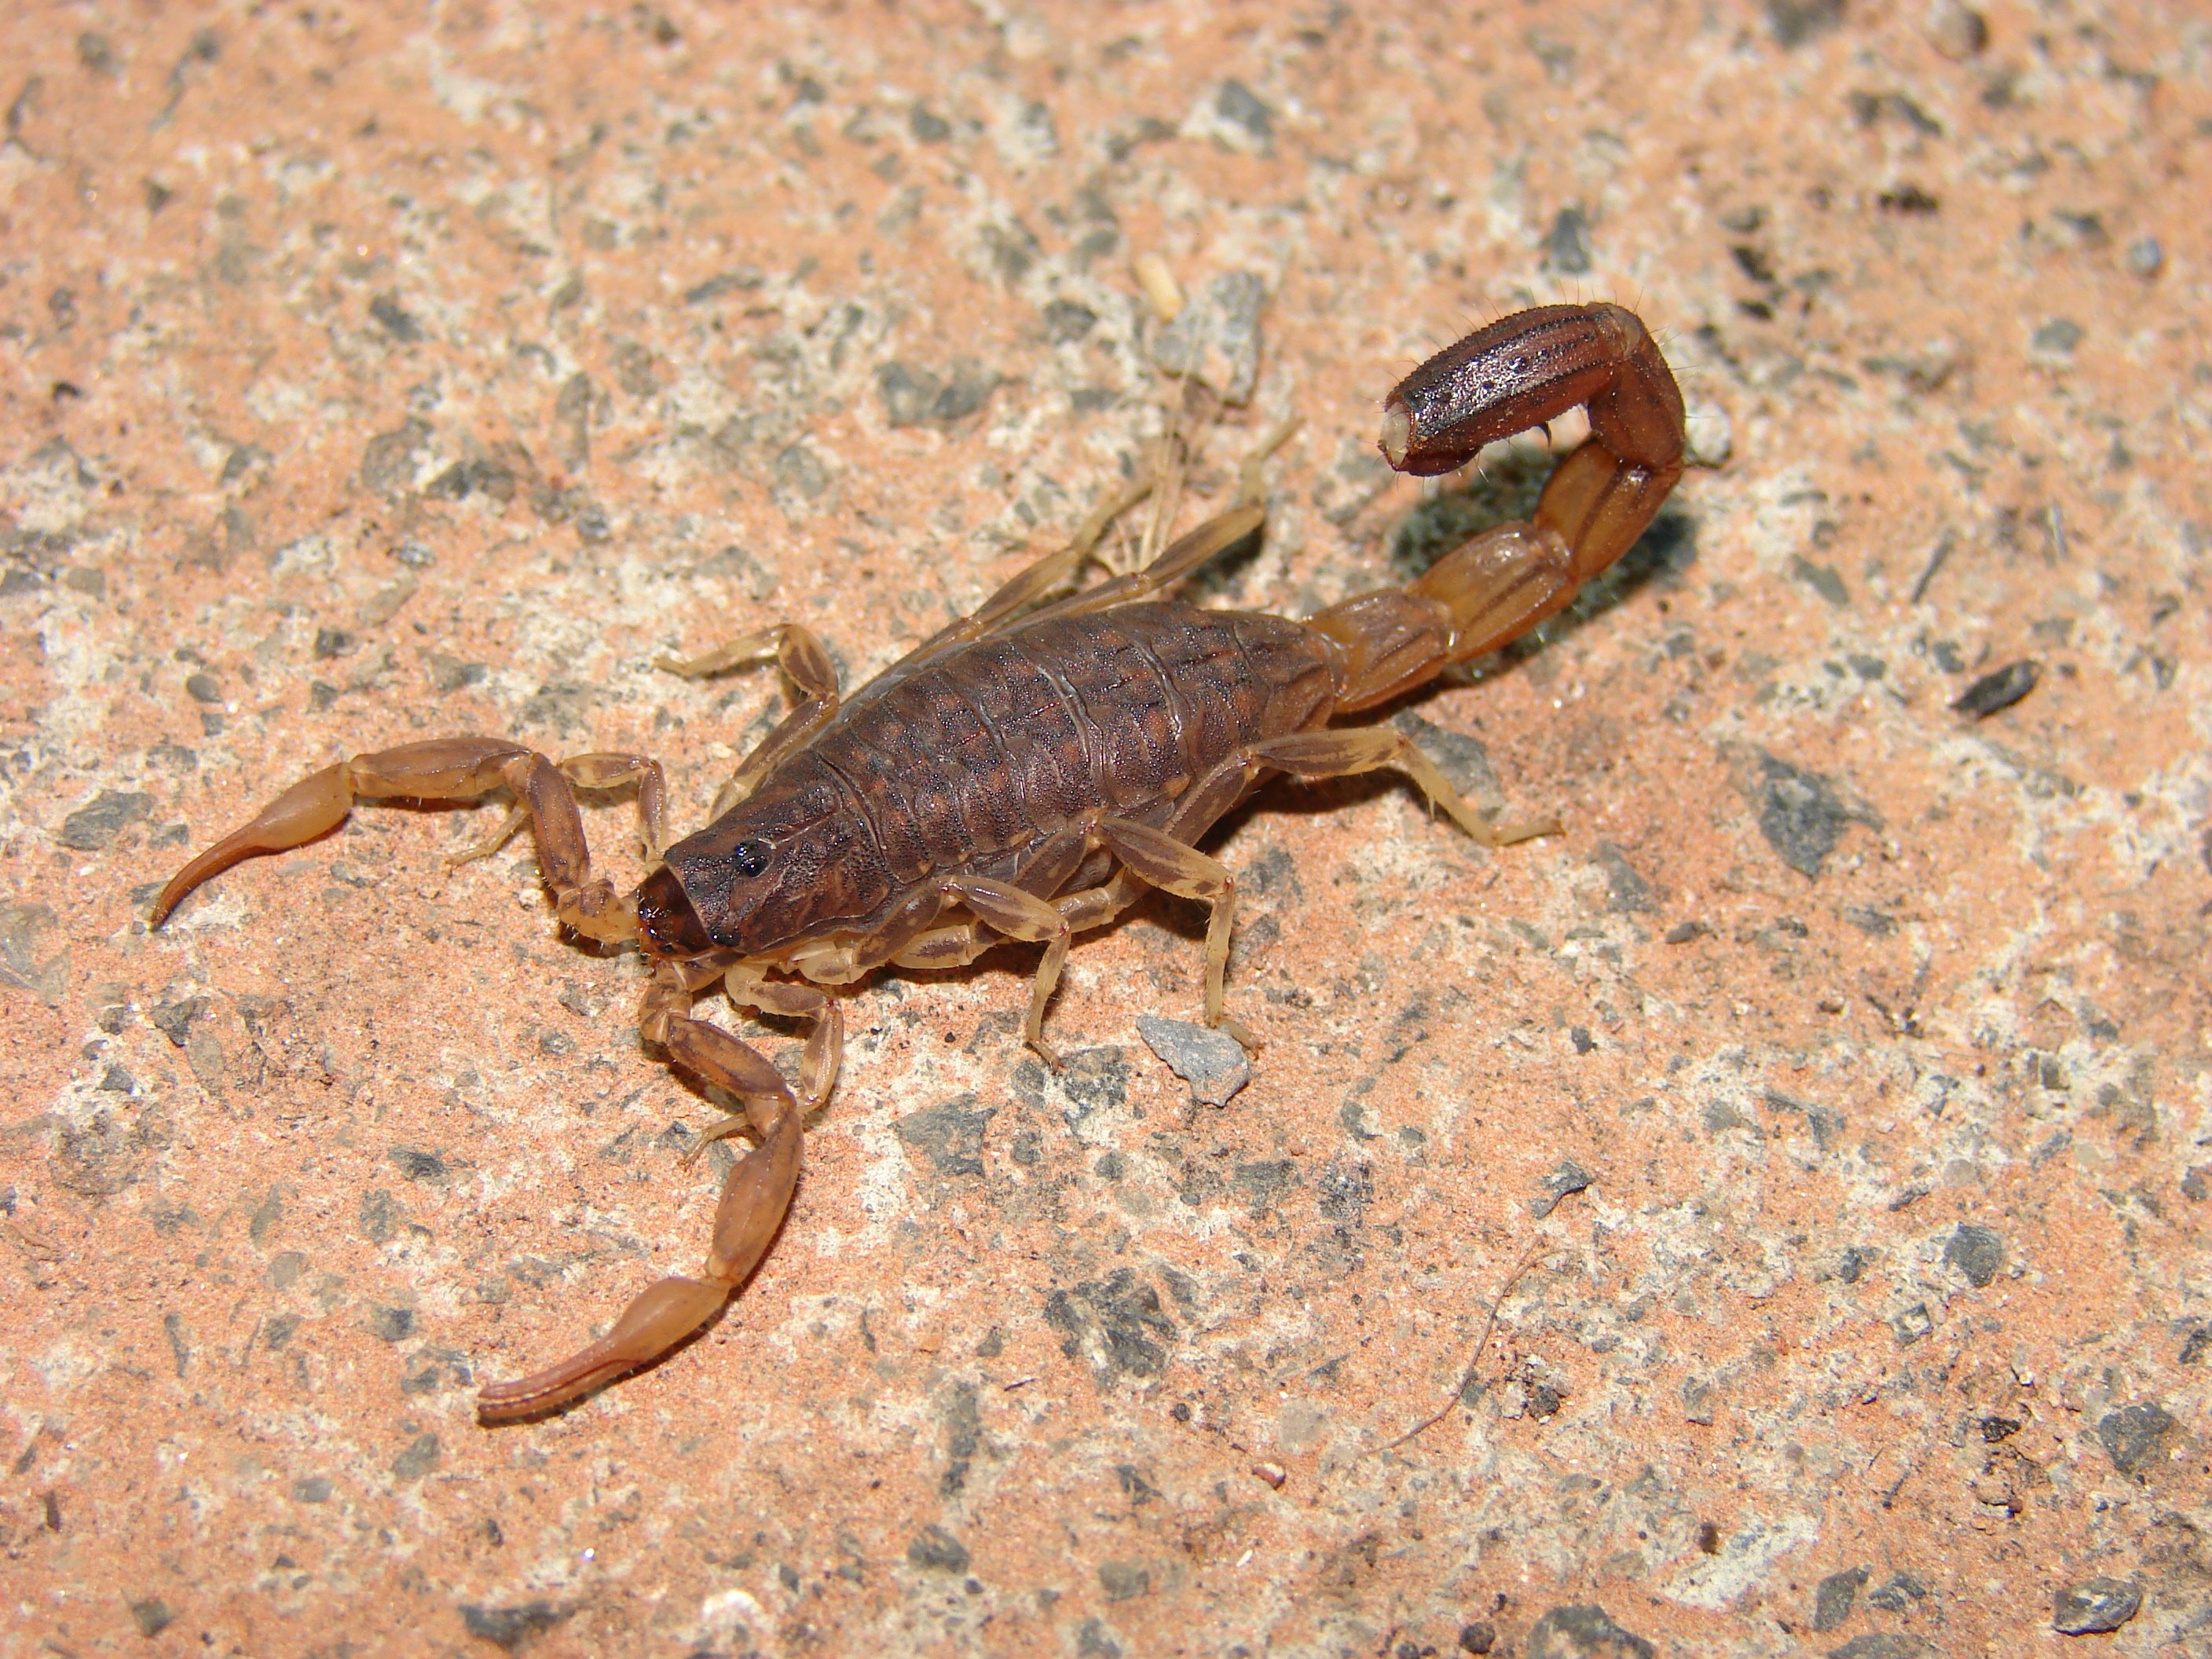 Родственники скорпиона. Вайовидовые Скорпионы. Garypus Titanius. Mesobuthus martensii. Жук Скорпион.